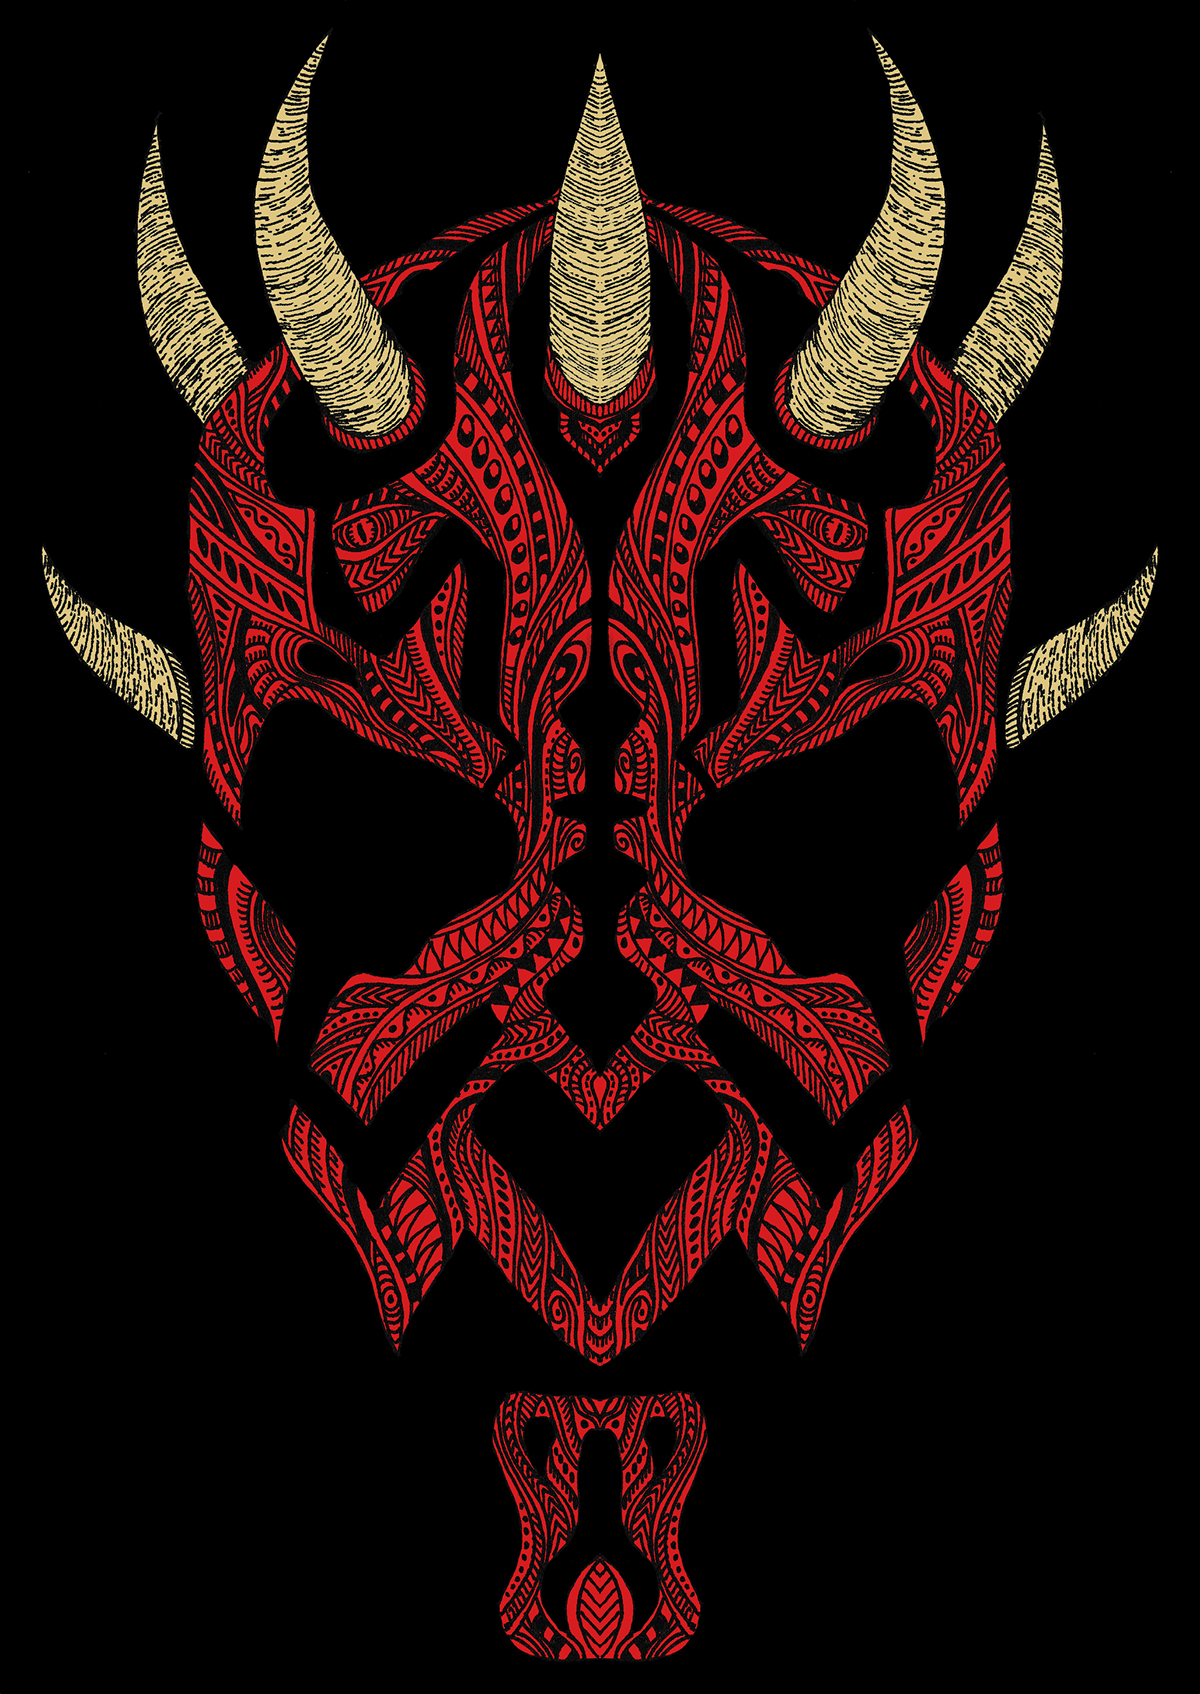 darth maul star Wars Character sith tattoo pattern decorative doodle artwork motives maori dark evil